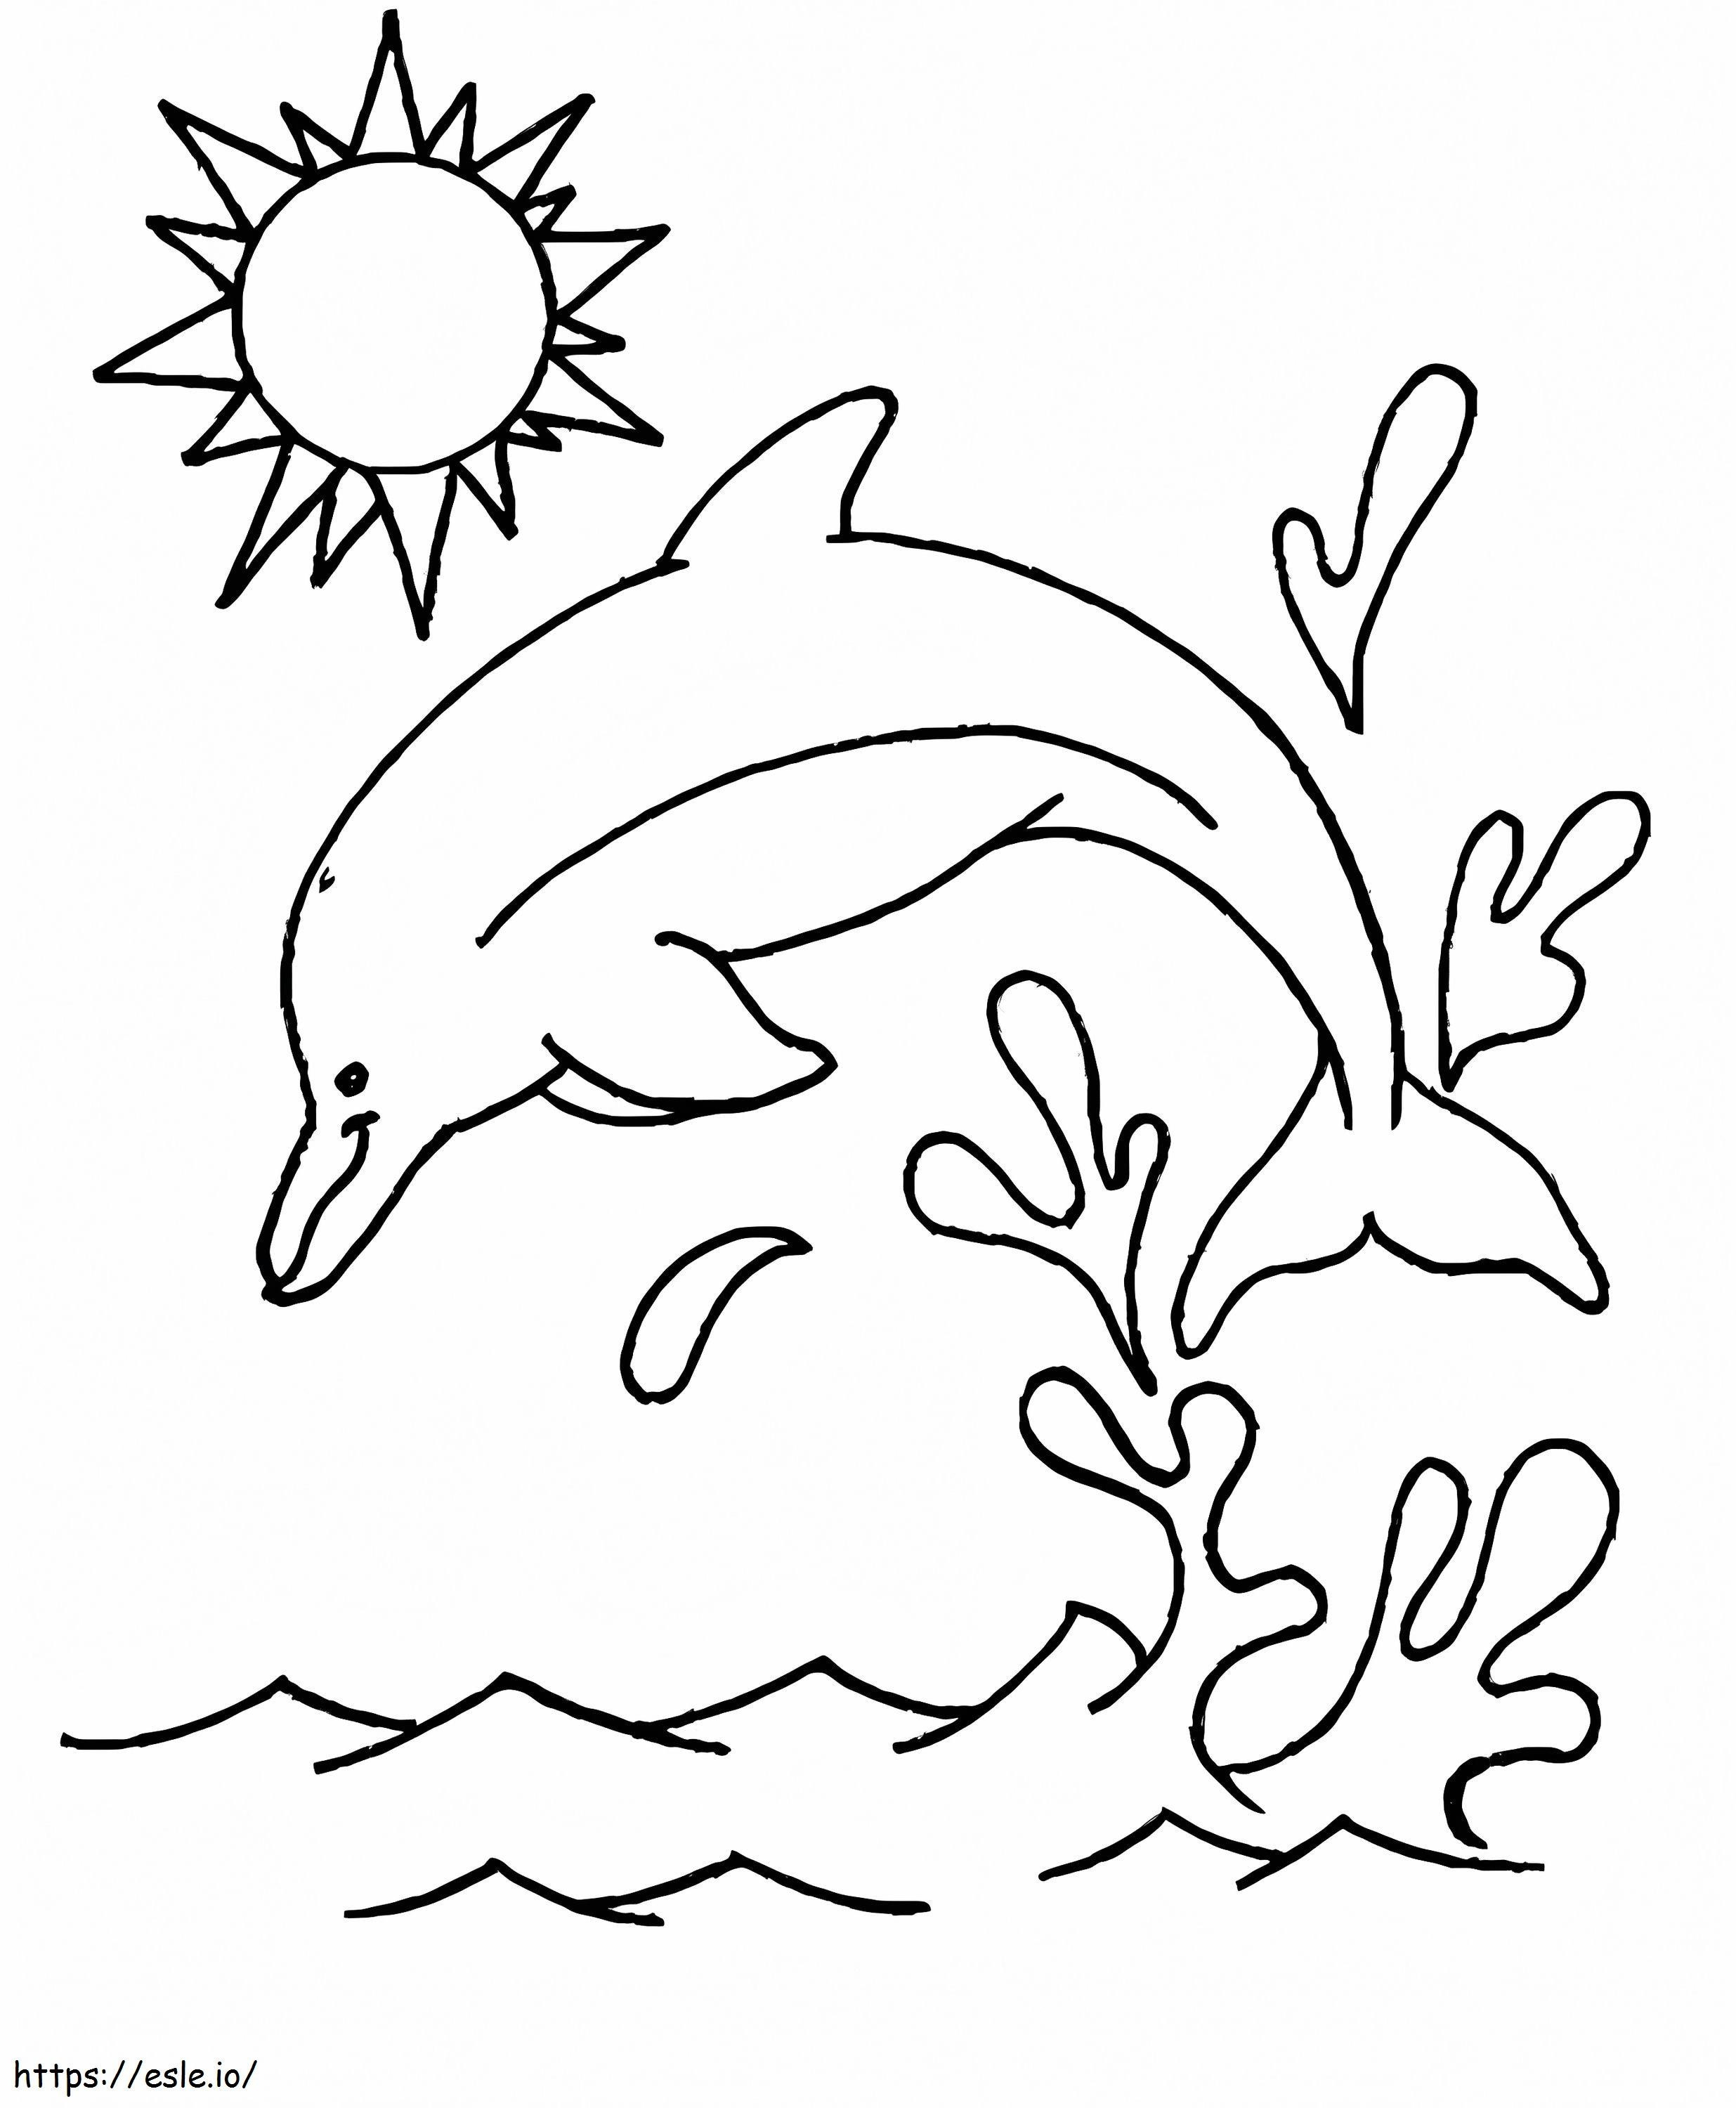 Coloriage Saut de dauphin à imprimer dessin